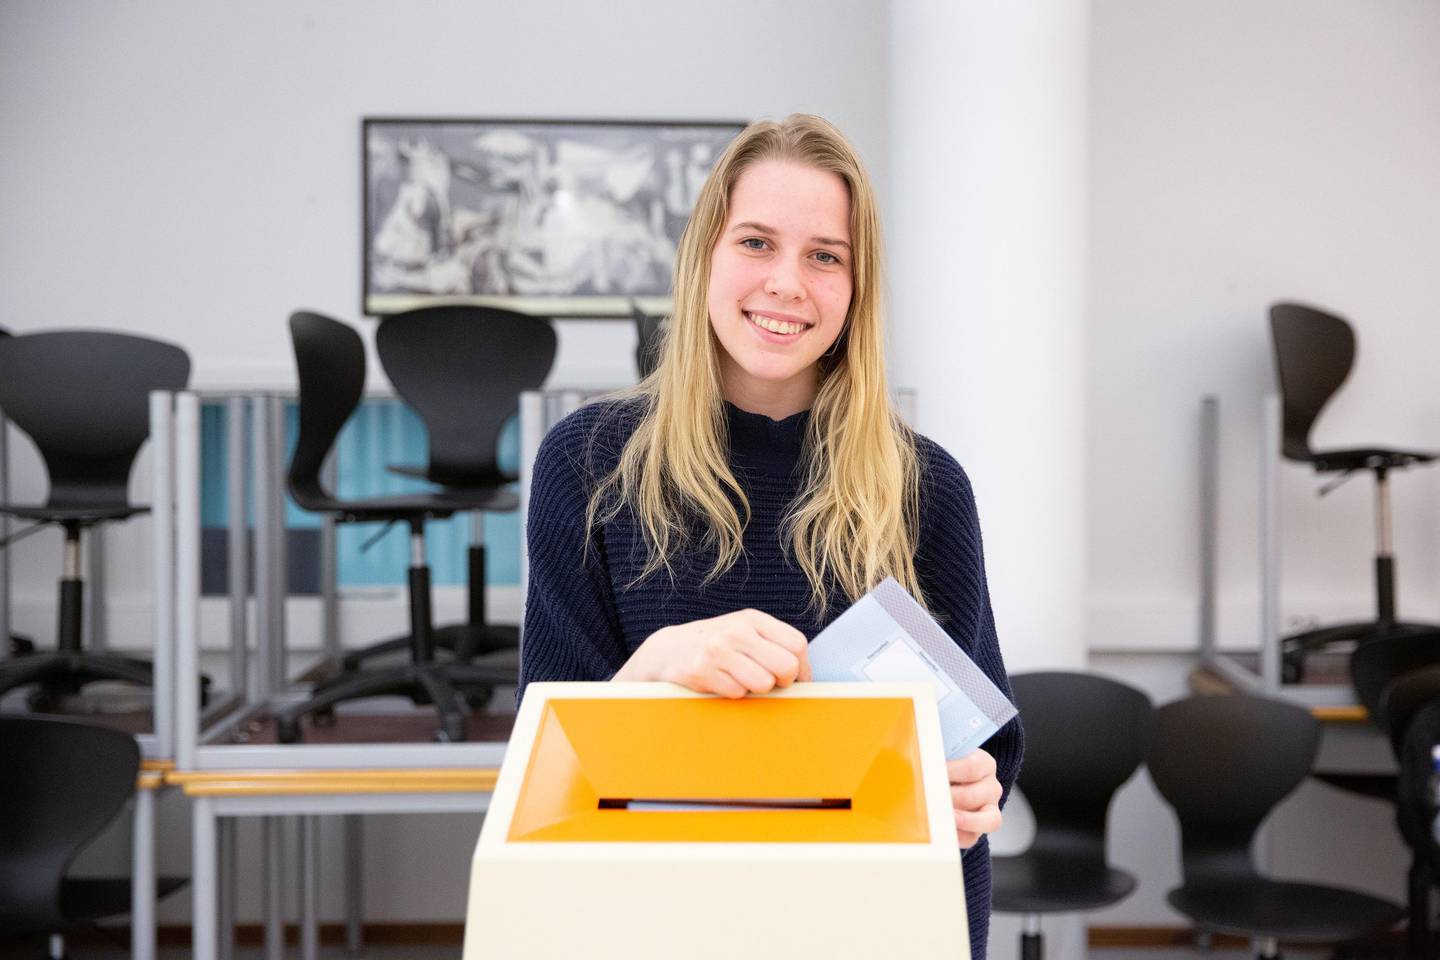 Med sine 18 år er Sofie Thelin den yngste lokalpolitikeren som stiller til valg under kommunevalget 2019 i Moss.